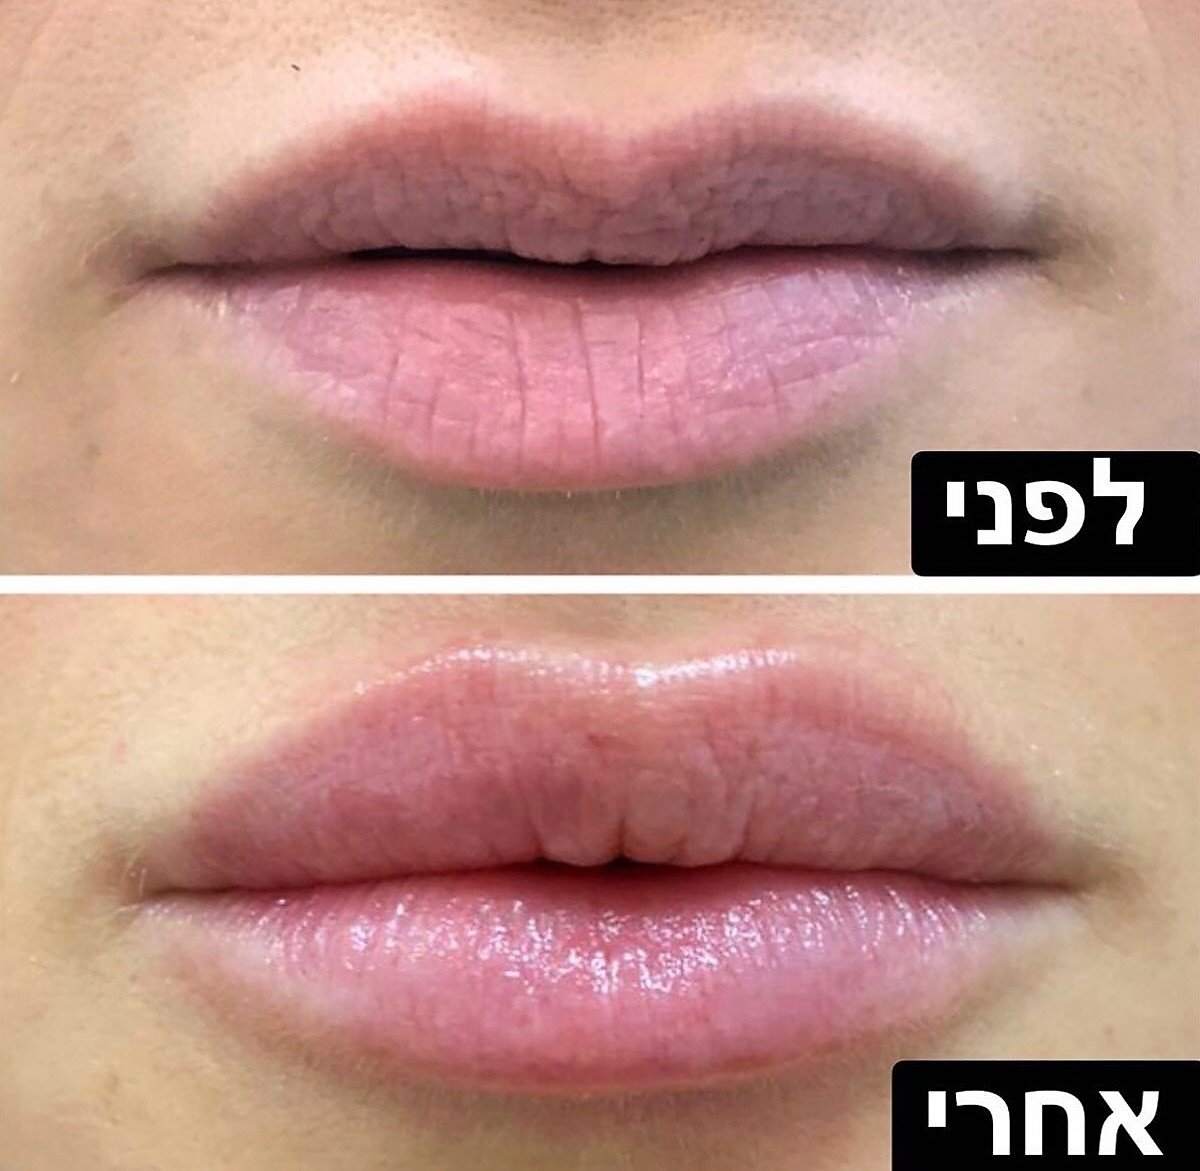 וולנס Wellness - עיצוב שפתיים בחומצה היאלורונית